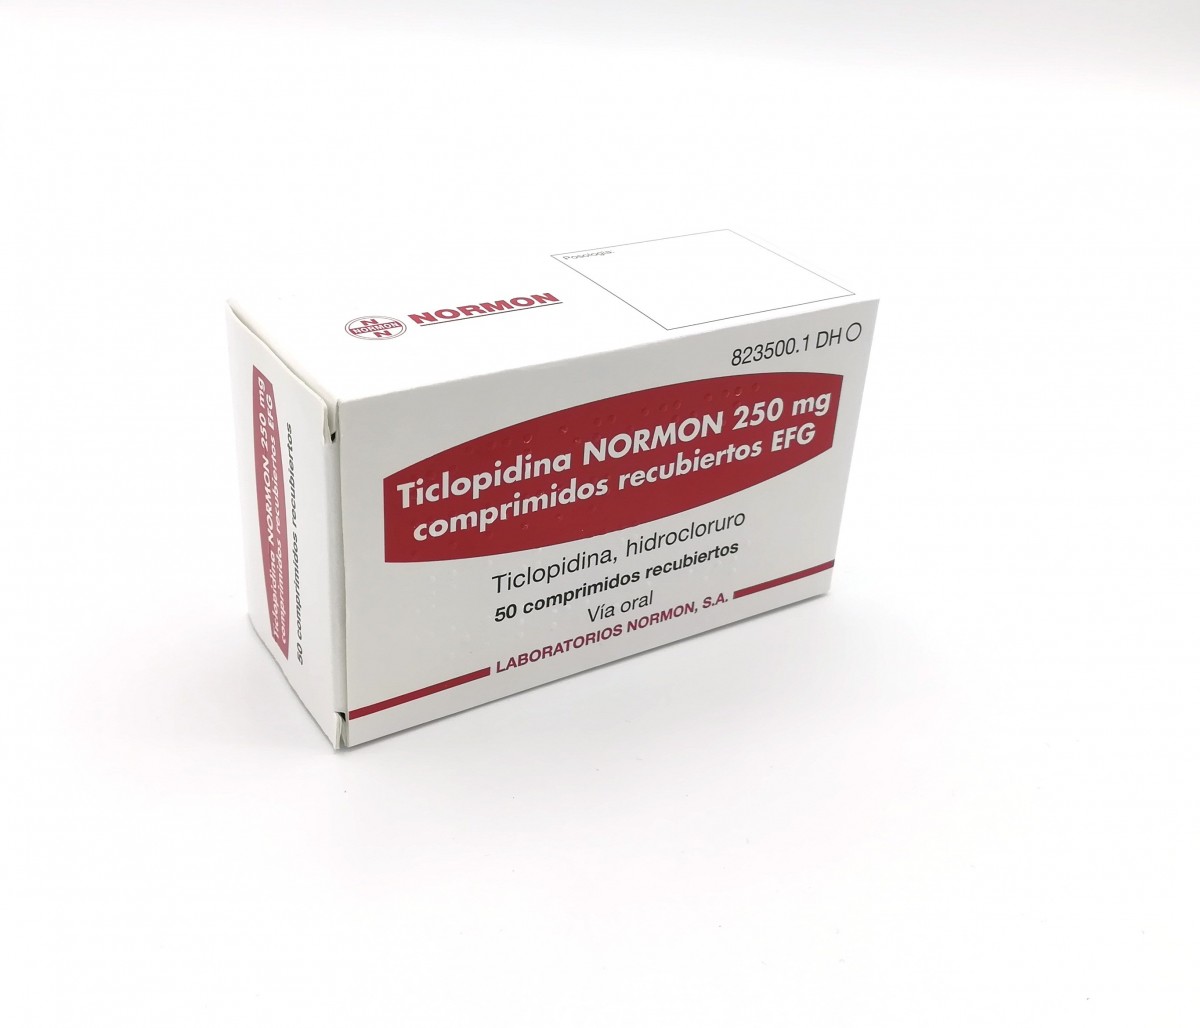 TICLOPIDINA NORMON 250 mg COMPRIMIDOS RECUBIERTOS EFG , 50 comprimidos fotografía del envase.